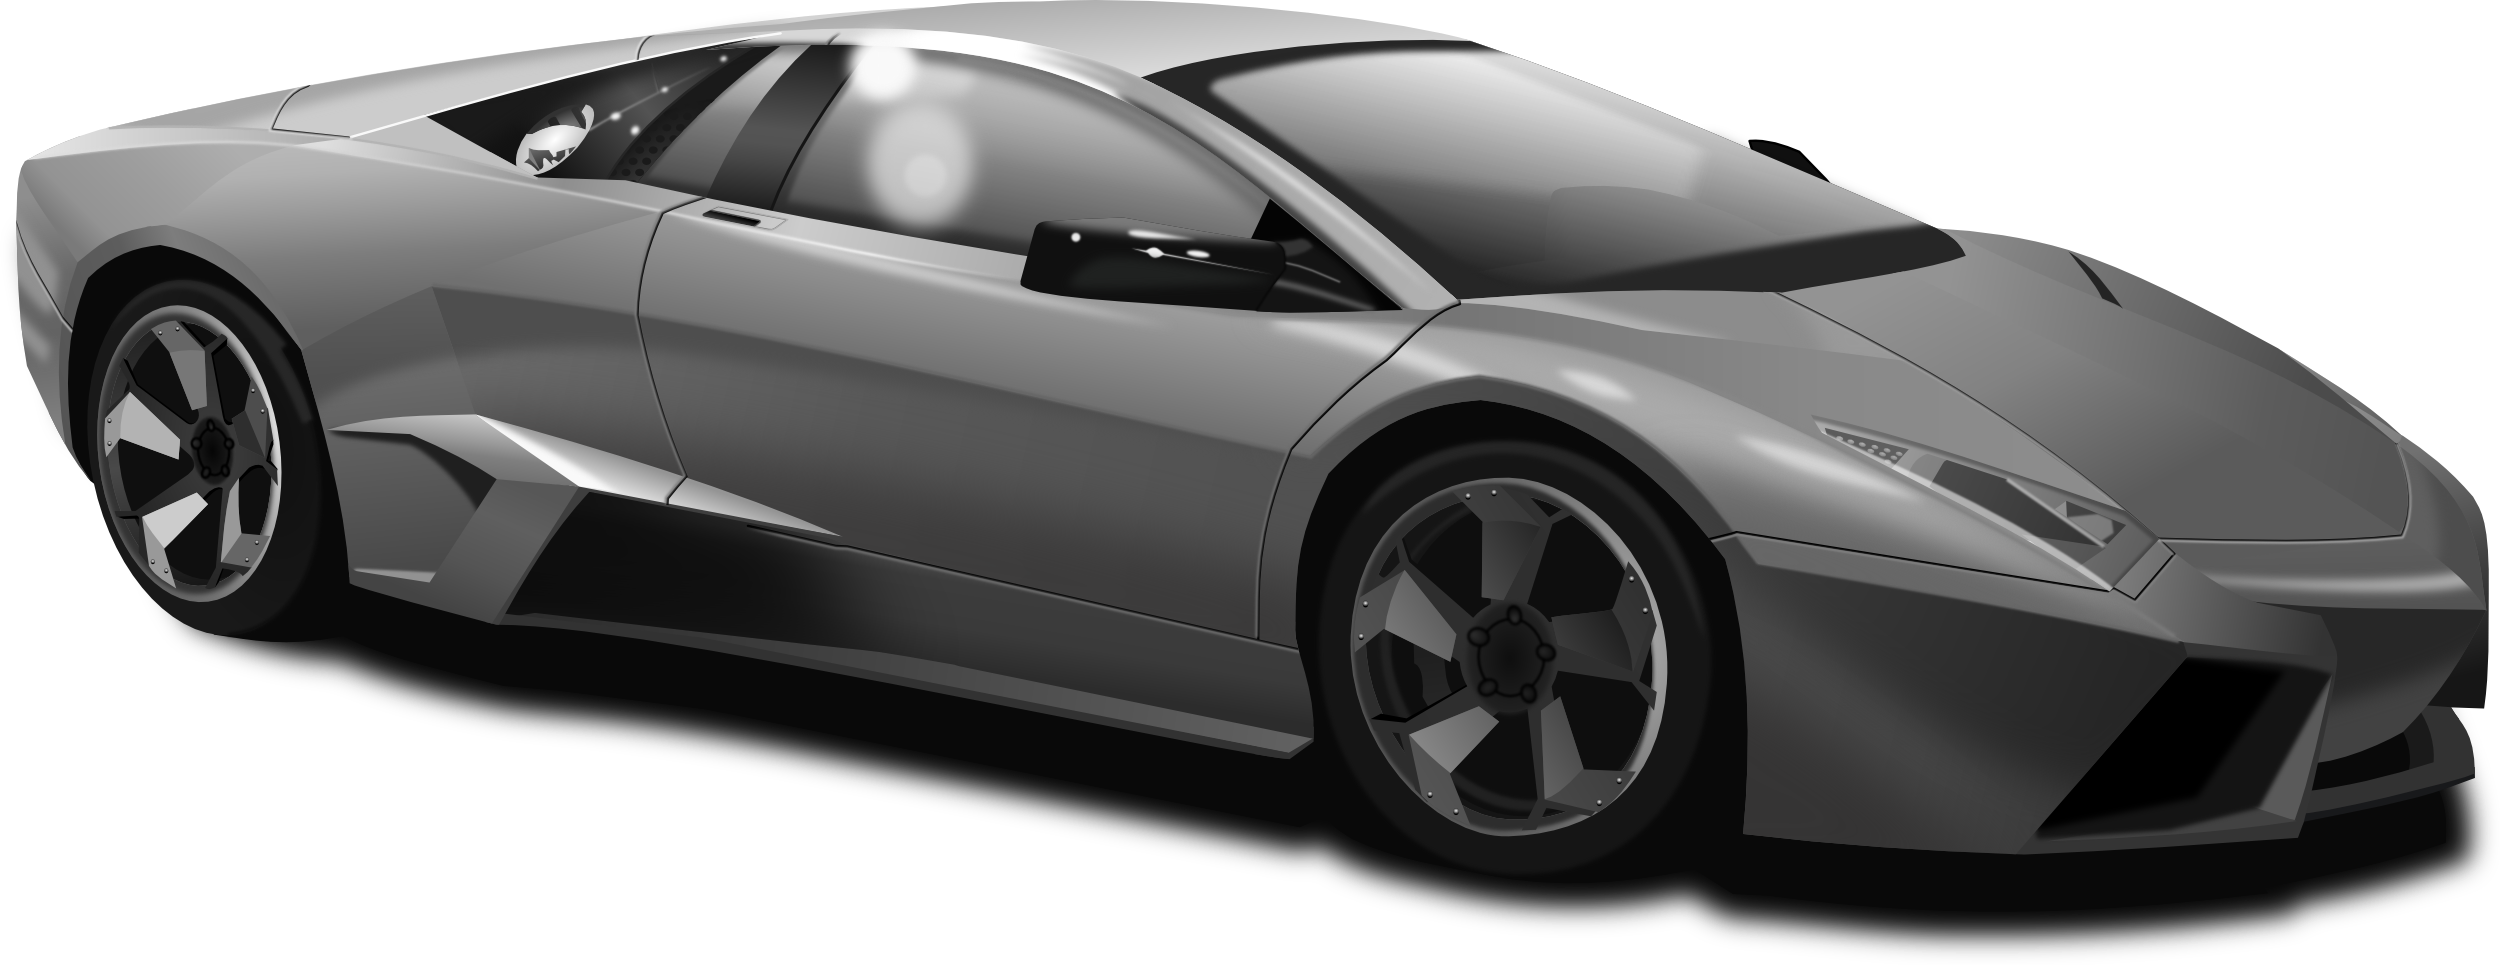 Lamborghini Png Image - Lamborghini Png (2500x965), Png Download